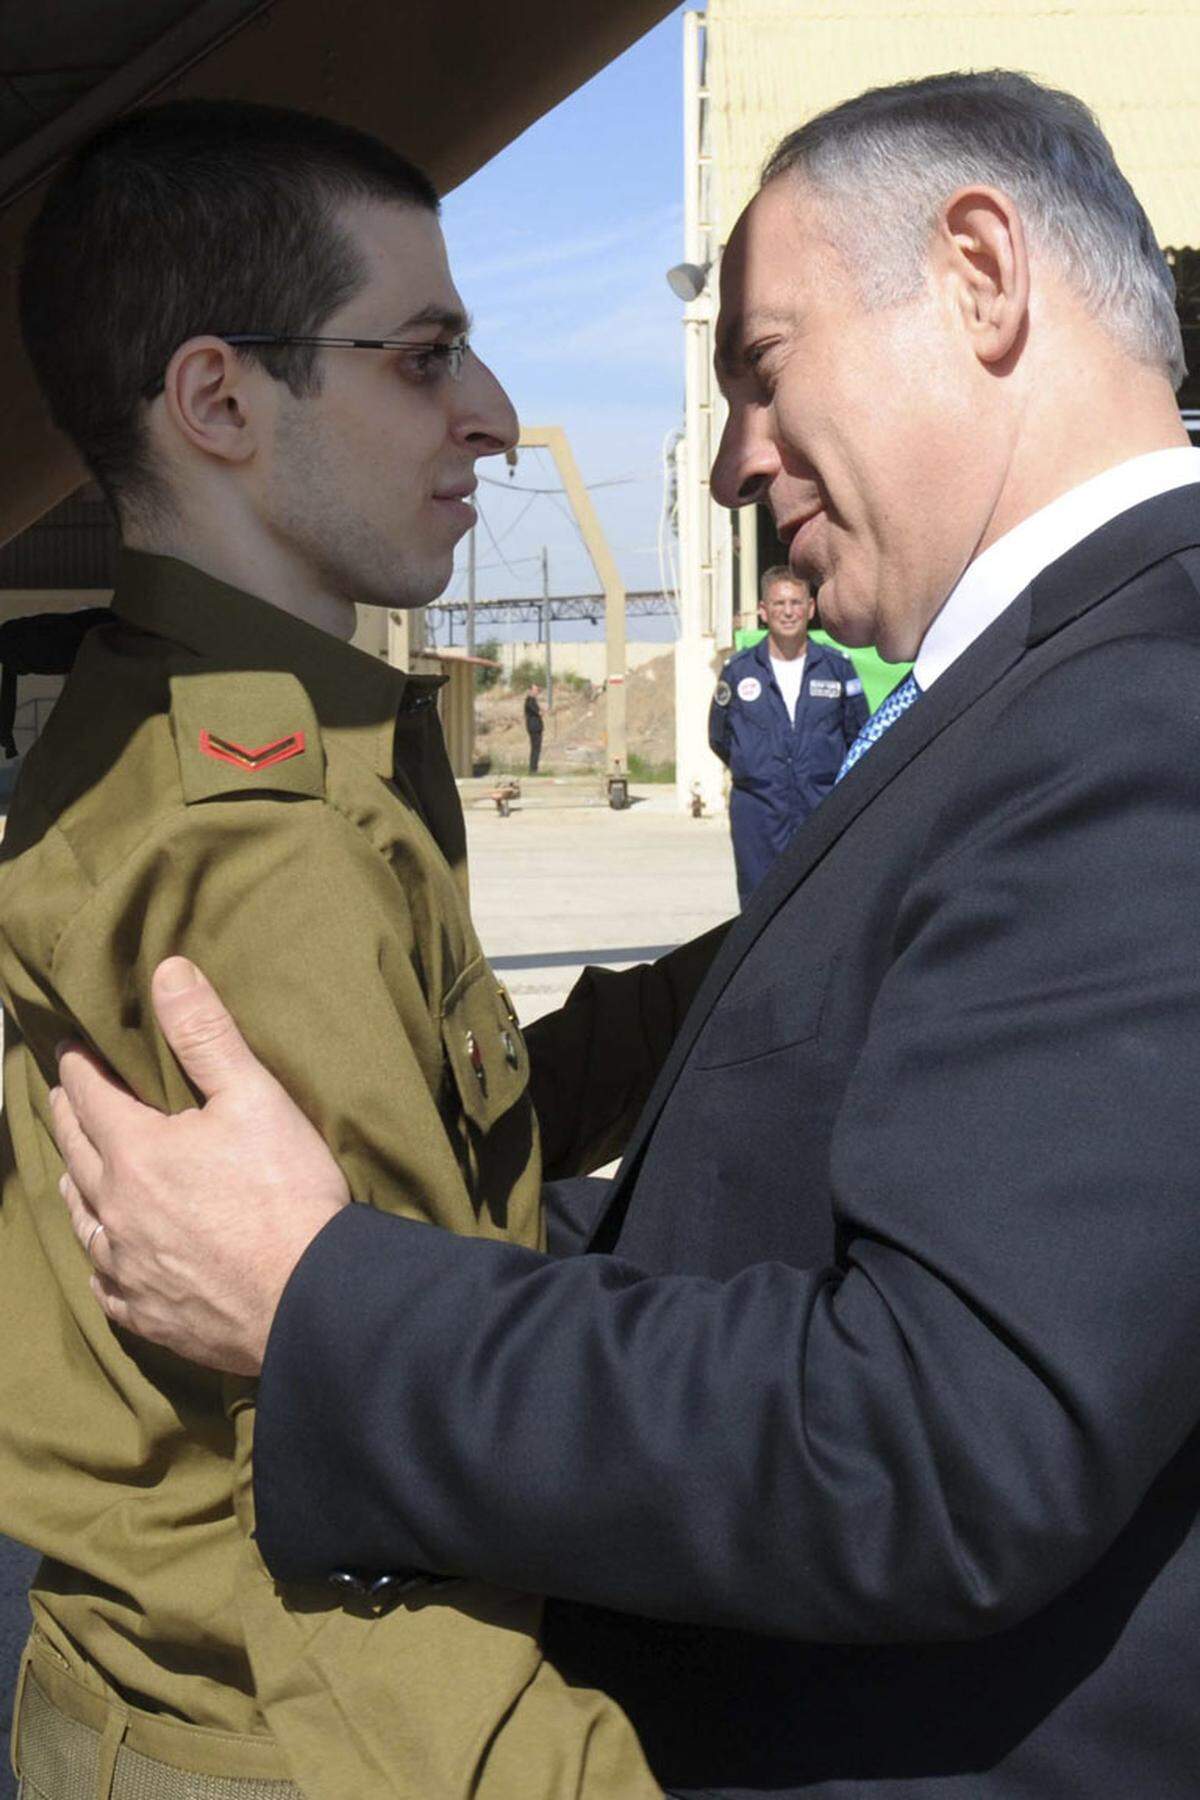 Auch Ministerpräsident Benjamin Netanyahu war beim Empfang des Soldaten auf der Militärbasis dabei: "Willkommen in Israel, Gilad. Wie gut, dass du zurückgekommen bist.". Zu Schalits Eltern sagte er: "Ich habe euch euer Kind zurückgebracht". Anschließend sollte ein Hubschrauber die Familie zurück in ihren Heimatort Mitzpe Hila im Norden Israels bringen. Die Straße, in der Shalits Elternhaus steht, wurde für den Verkehr gesperrt.